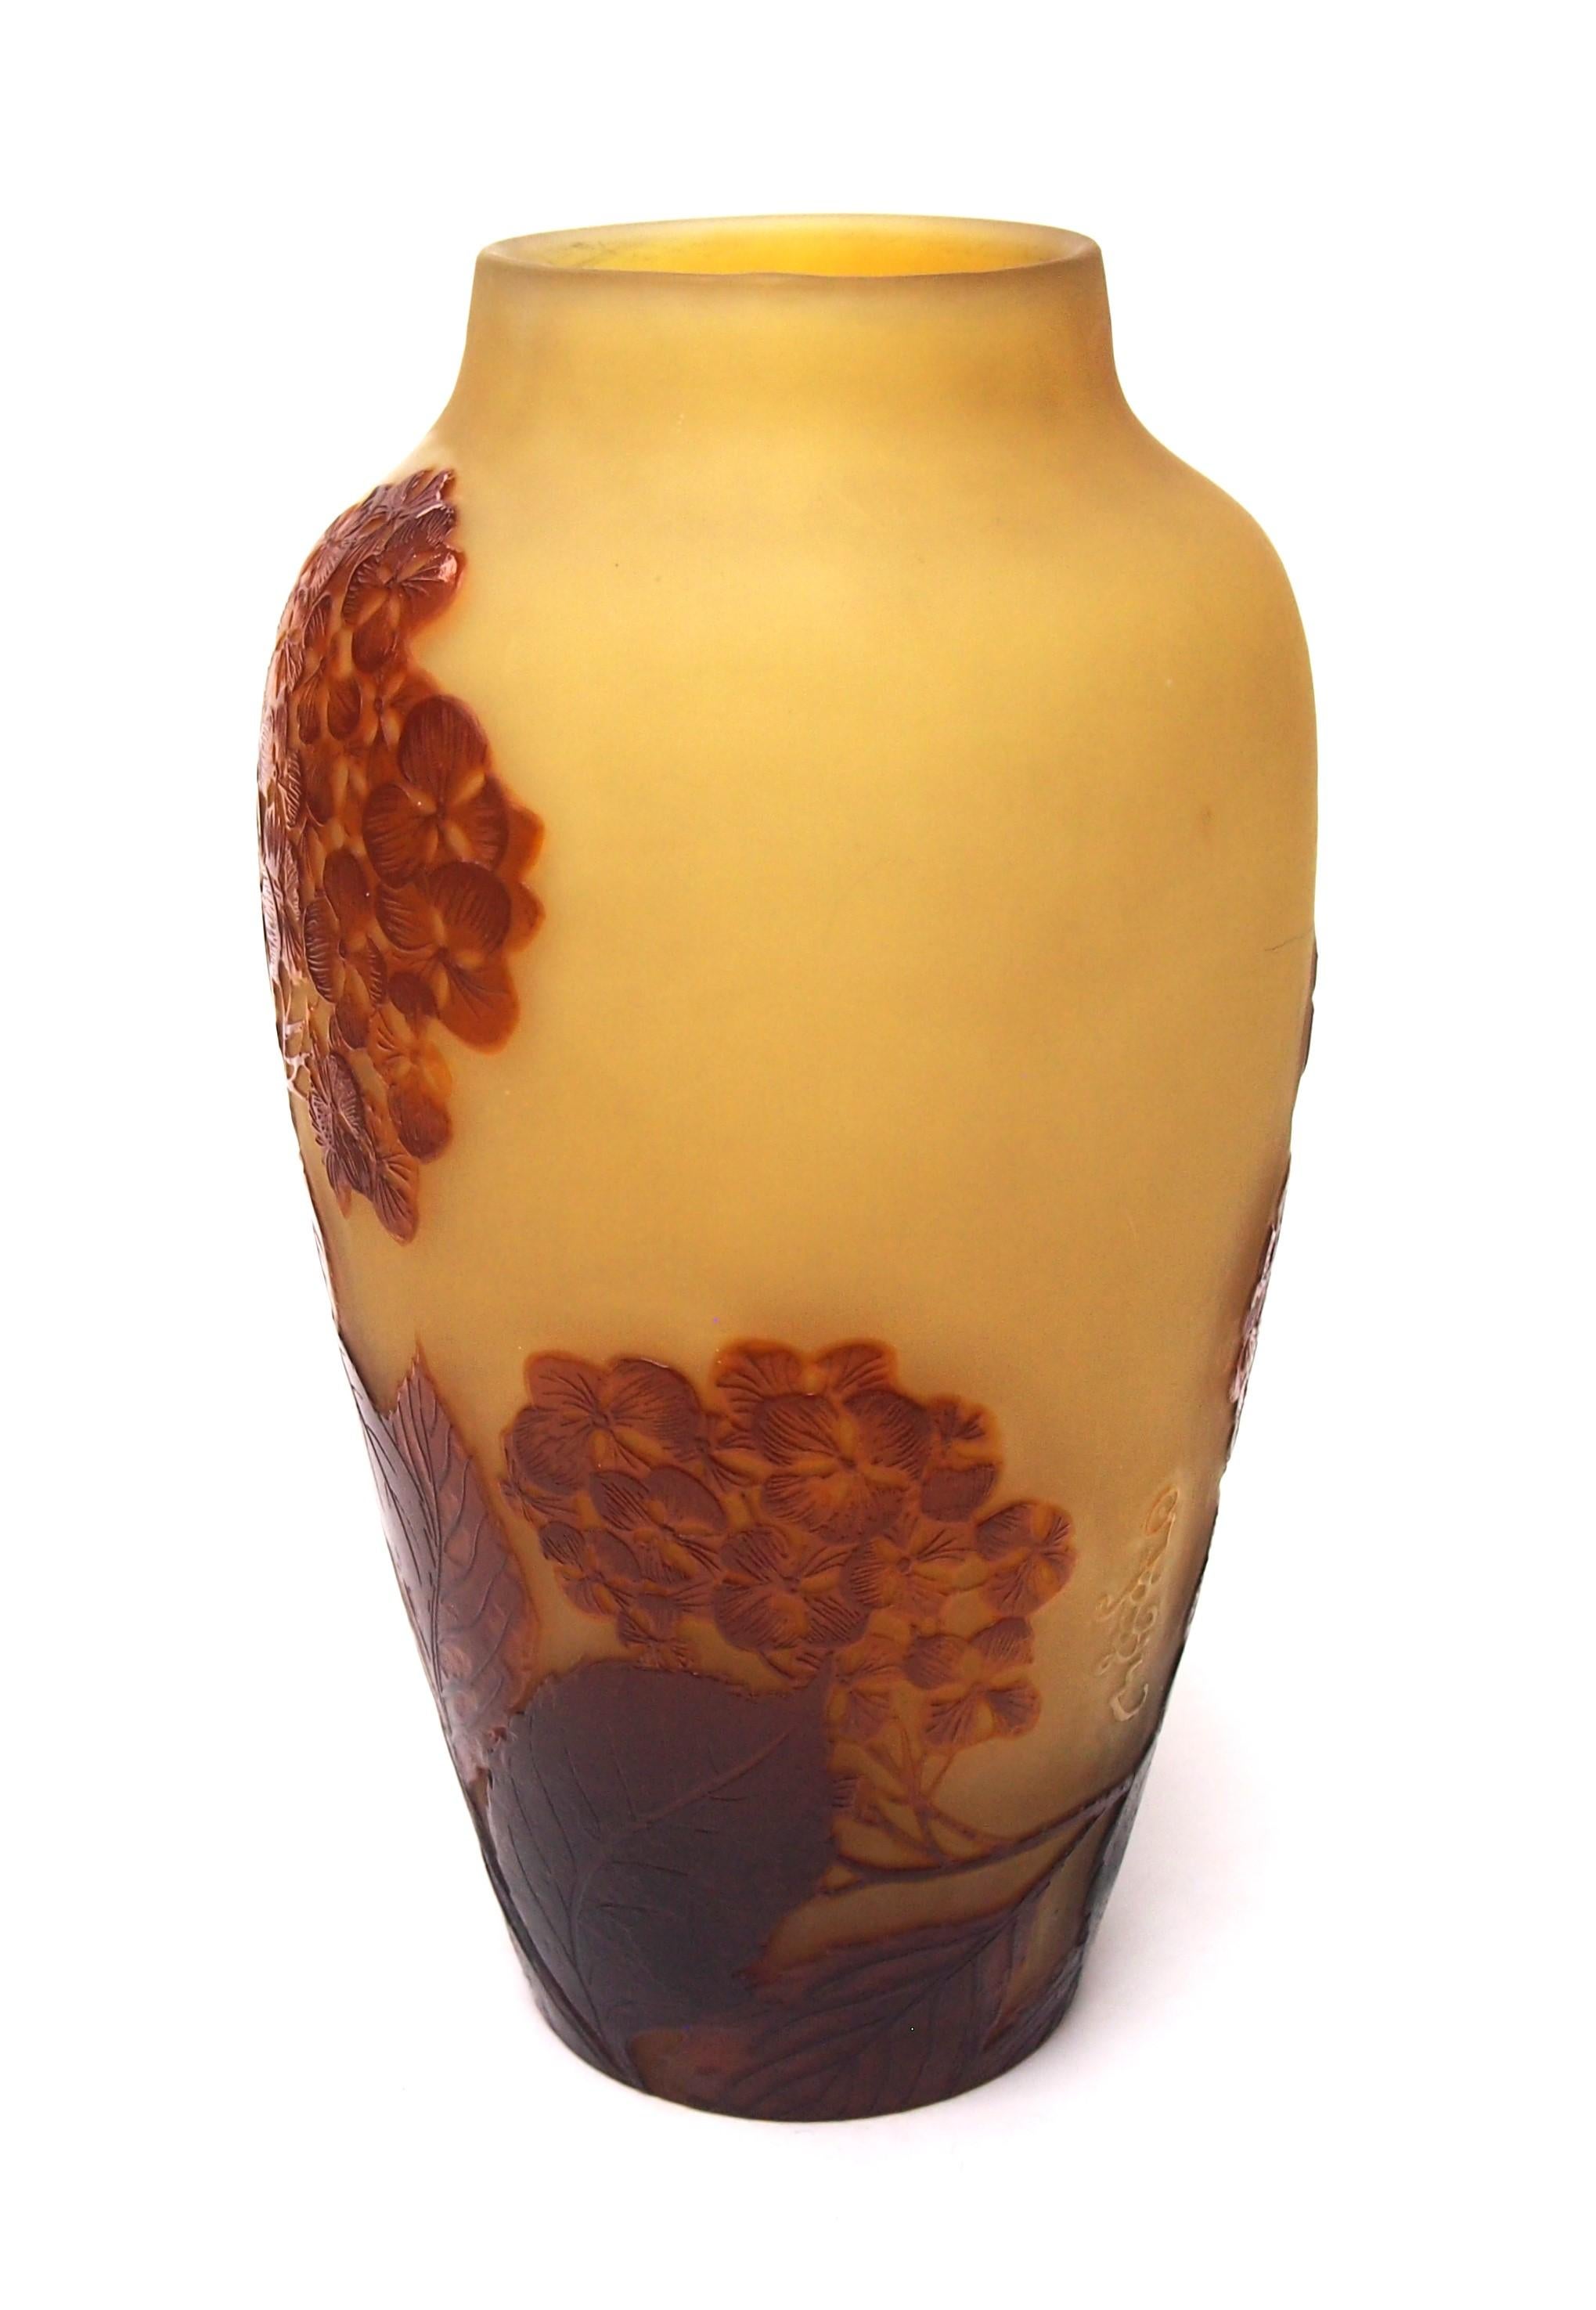 Fabuloso jarrón camafeo tardío de Galle, de color marrón sobre amarillo, con una ingeniosa y fina representación naturalista de hortensias de invierno y ligeramente pulido al fuego. Este gran y excepcional jarrón camafeo pertenece al último y